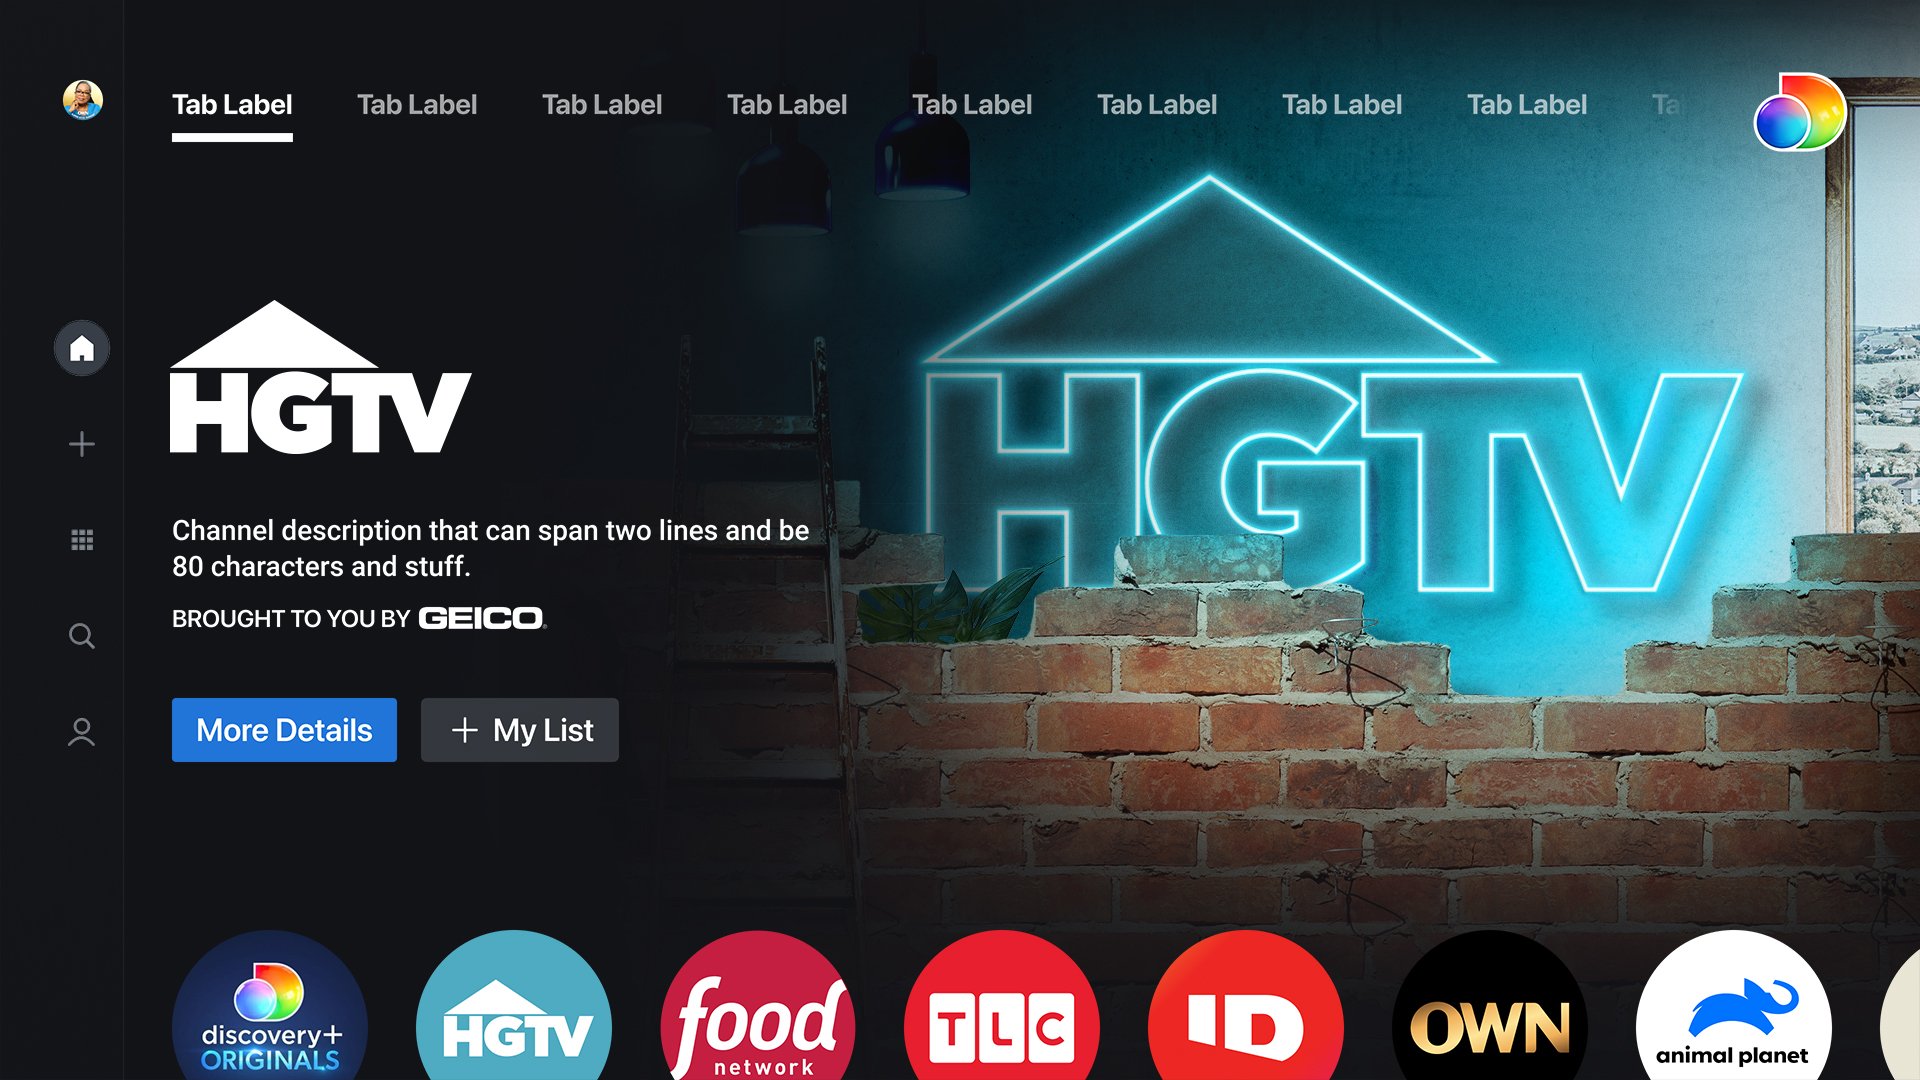 HGTV_Home-Featured-Hero-V2.jpg